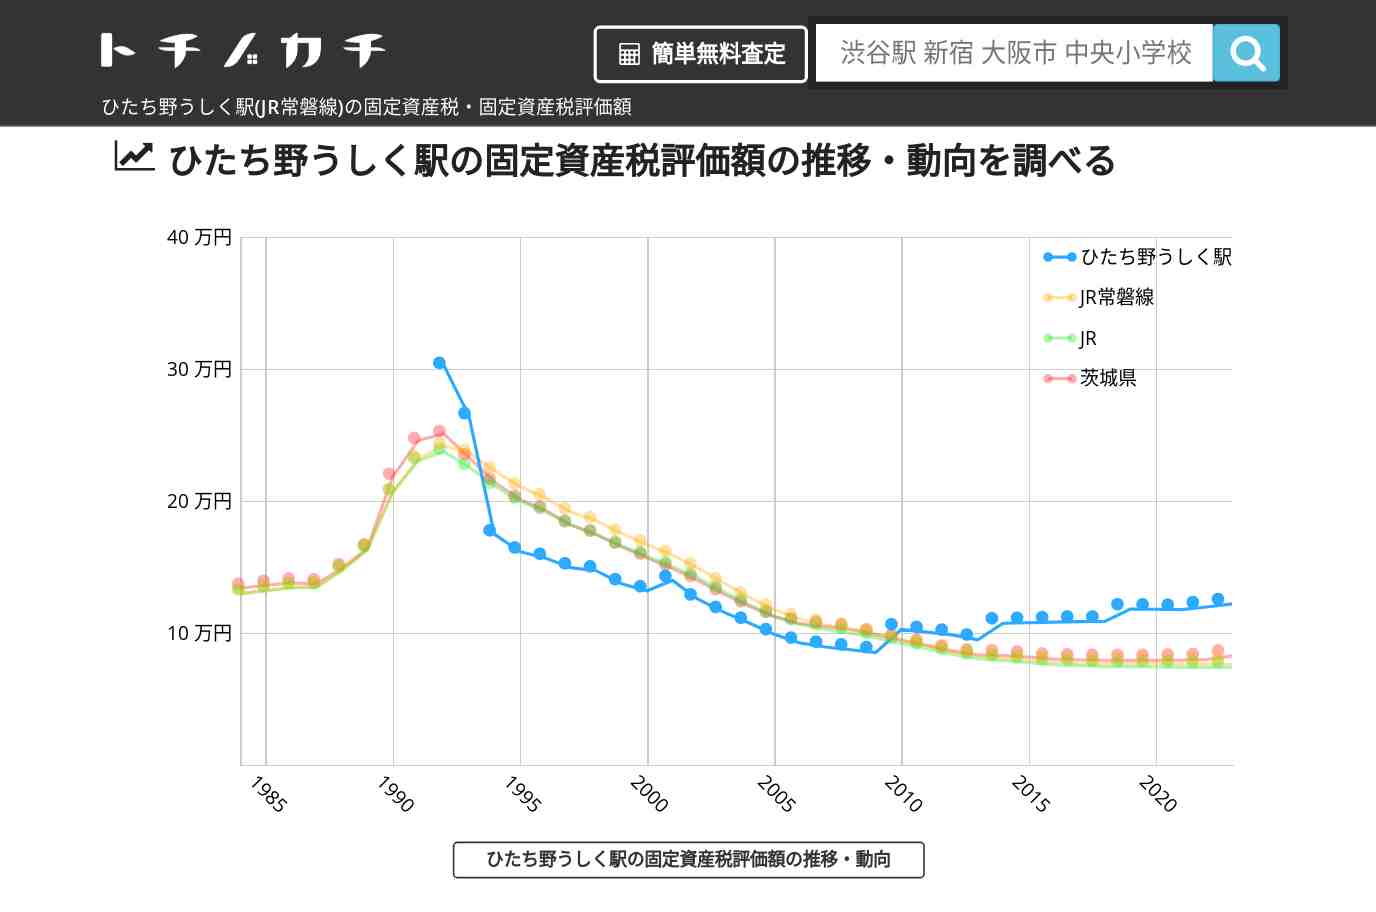 ひたち野うしく駅(JR常磐線)の固定資産税・固定資産税評価額 | トチノカチ